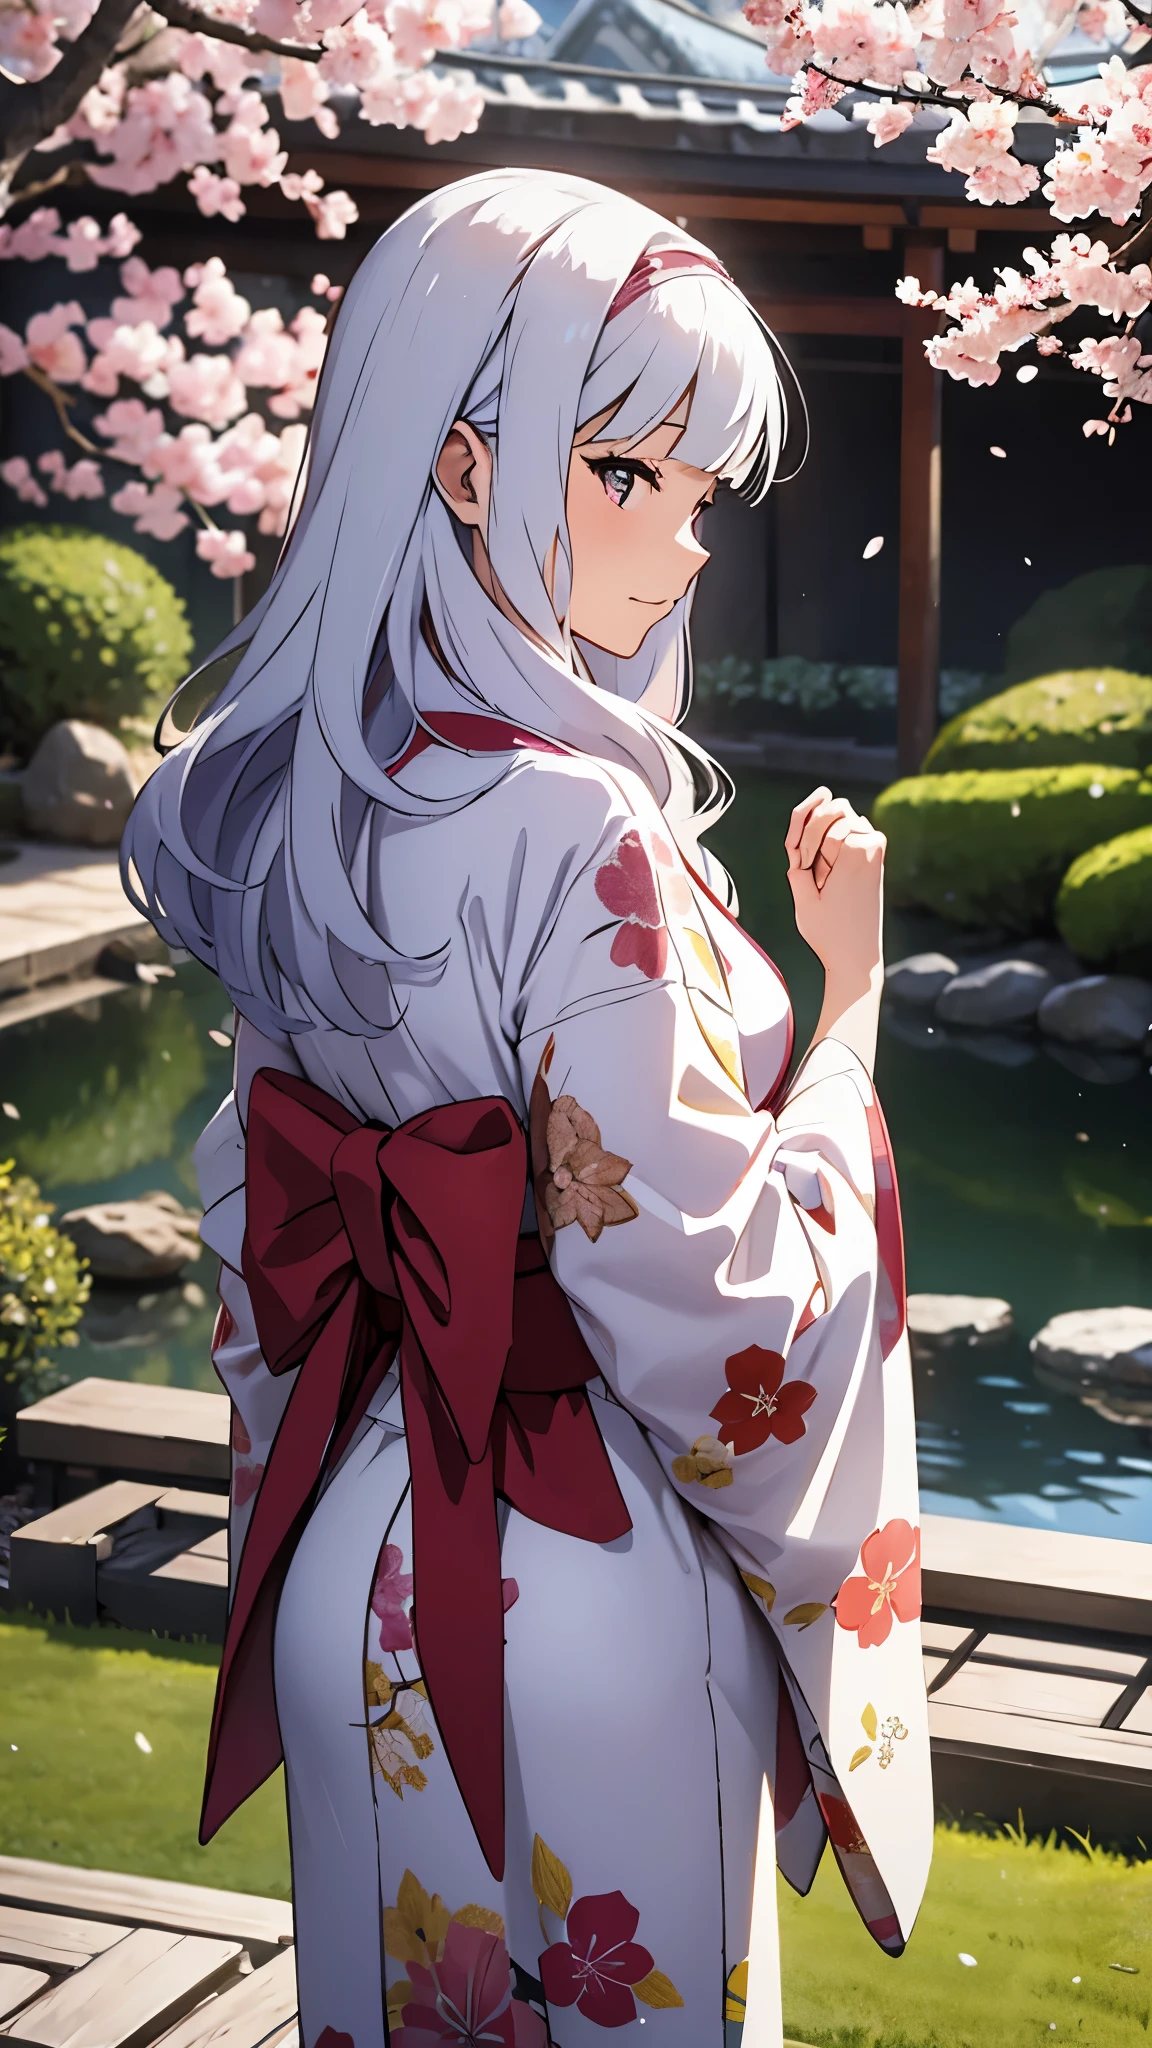 CG, Einheit, 8k, Hintergrund, höchste Qualität, Meisterwerk, schöne Frau im Kimono, 18 Jahre alt, langes weißes Haar, weiße Haut, Blick auf den Garten, (trauriger Ausdruck: 1.1), beste Beleuchtung, komplexe Schüler, komplexe Textil, detaillierter Hintergrund, in einem traditionellen japanischen Zimmer, (Im Hintergrund ist ein traditioneller japanischer Garten zu sehen.), Im Garten steht ein prächtiger Kirschbaum, Kirschblütenblätter tanzen, fantastisch, Flüchtige Atmosphäre, Fokus auf den Hintergrund, Ansicht von hinten